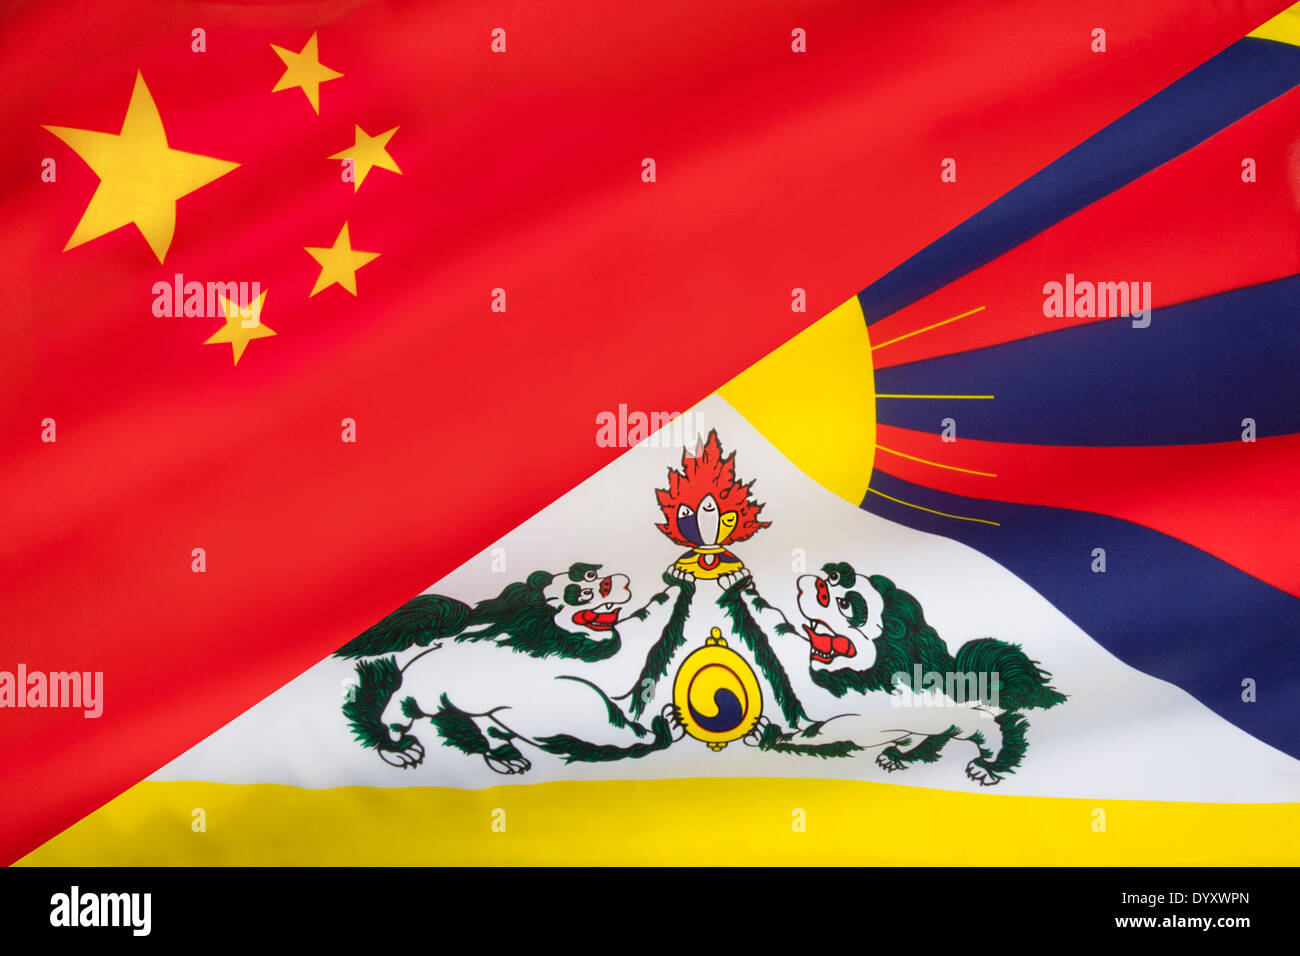 Le drapeau de la Chine mélangé avec le drapeau du Tibet libre (snow lion drapeau). Banque D'Images